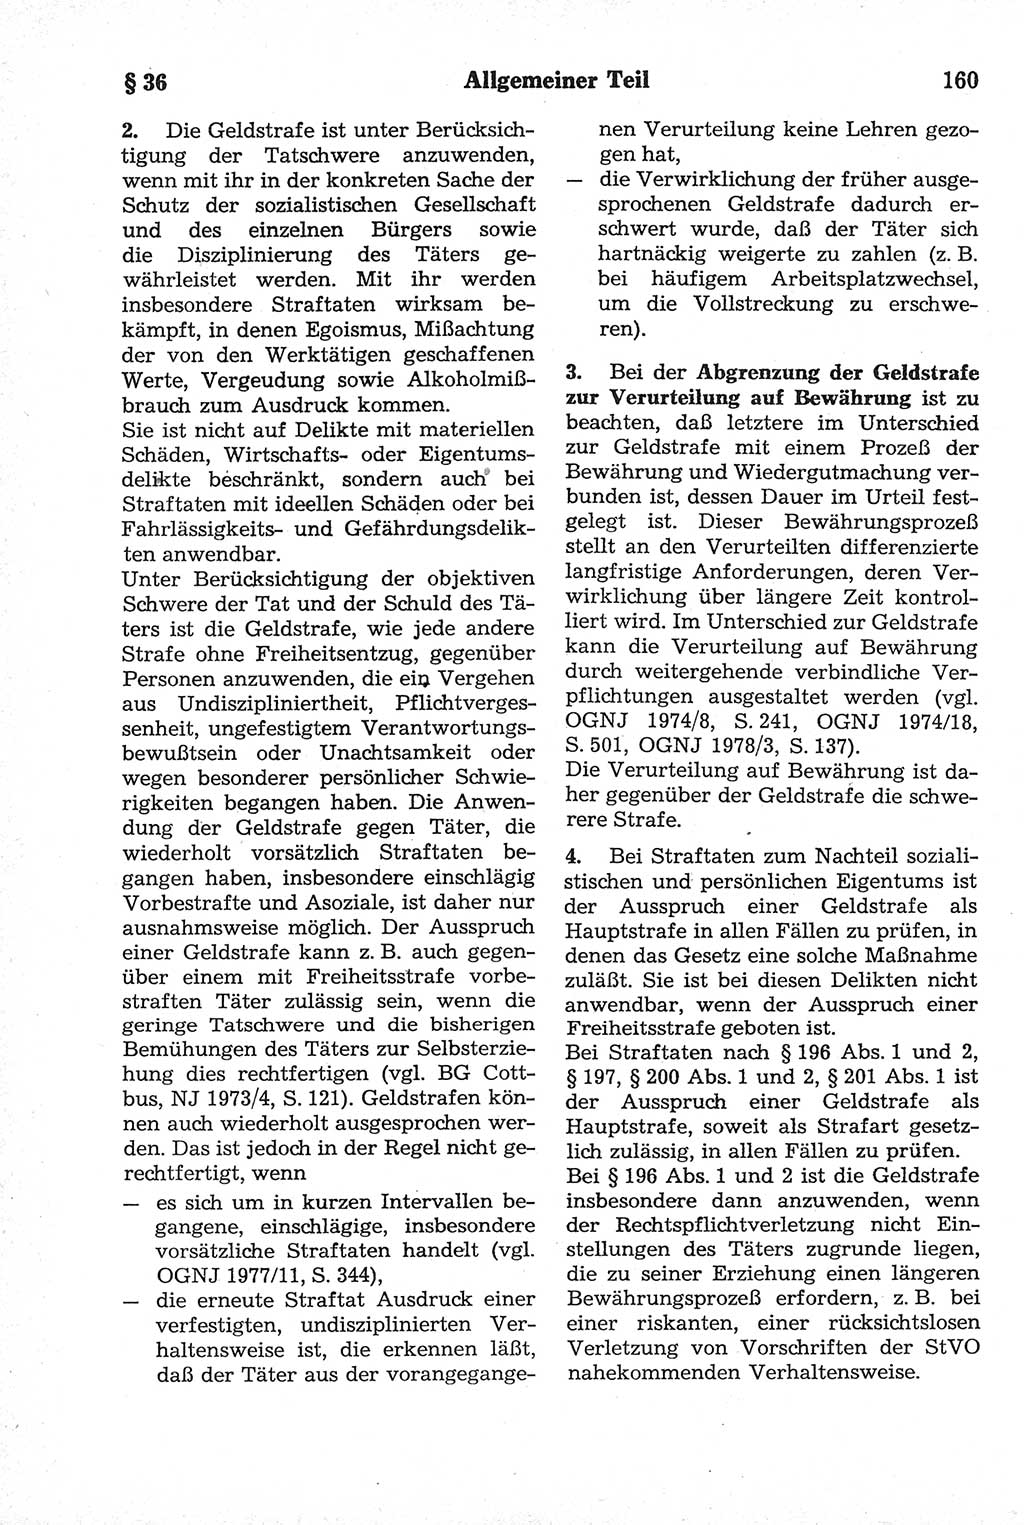 Strafrecht der Deutschen Demokratischen Republik (DDR), Kommentar zum Strafgesetzbuch (StGB) 1981, Seite 160 (Strafr. DDR Komm. StGB 1981, S. 160)